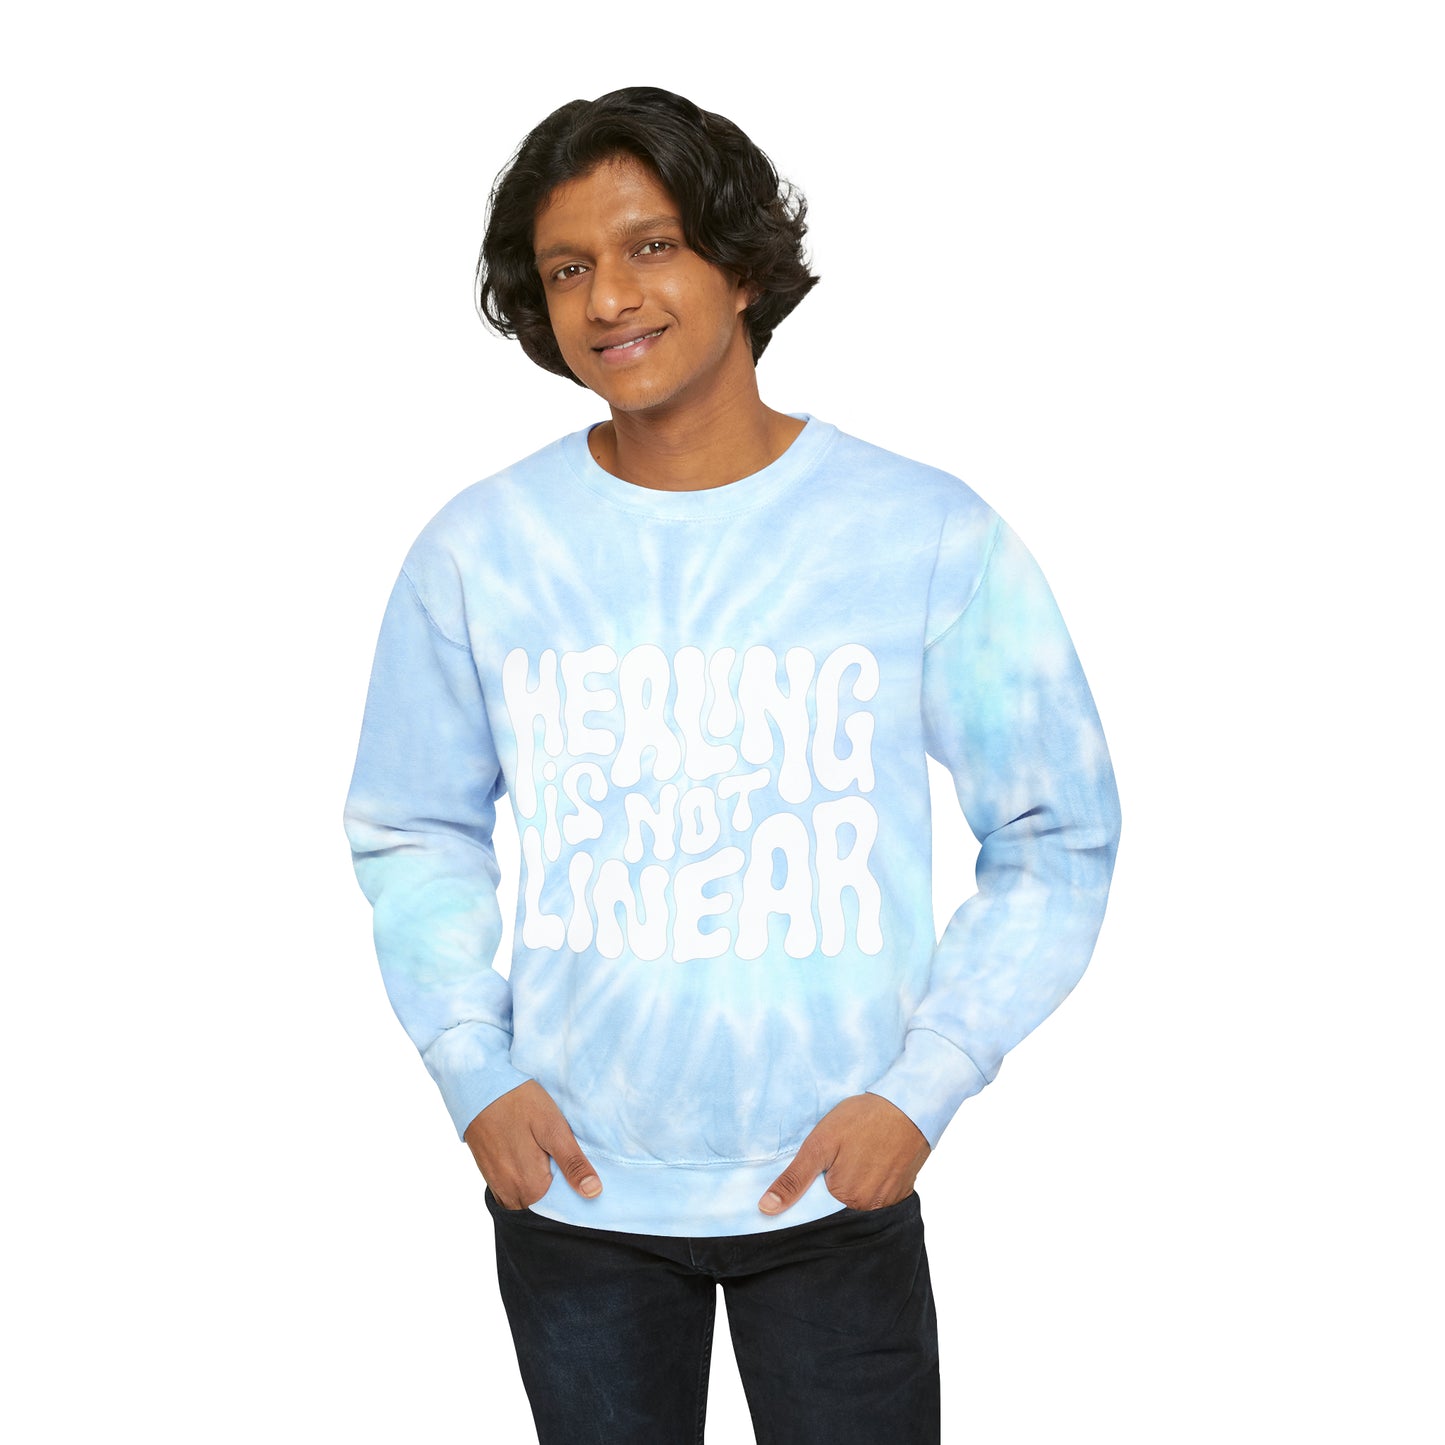 Healing Is Not Linear Tie-Dye Mantra Sweatshirt